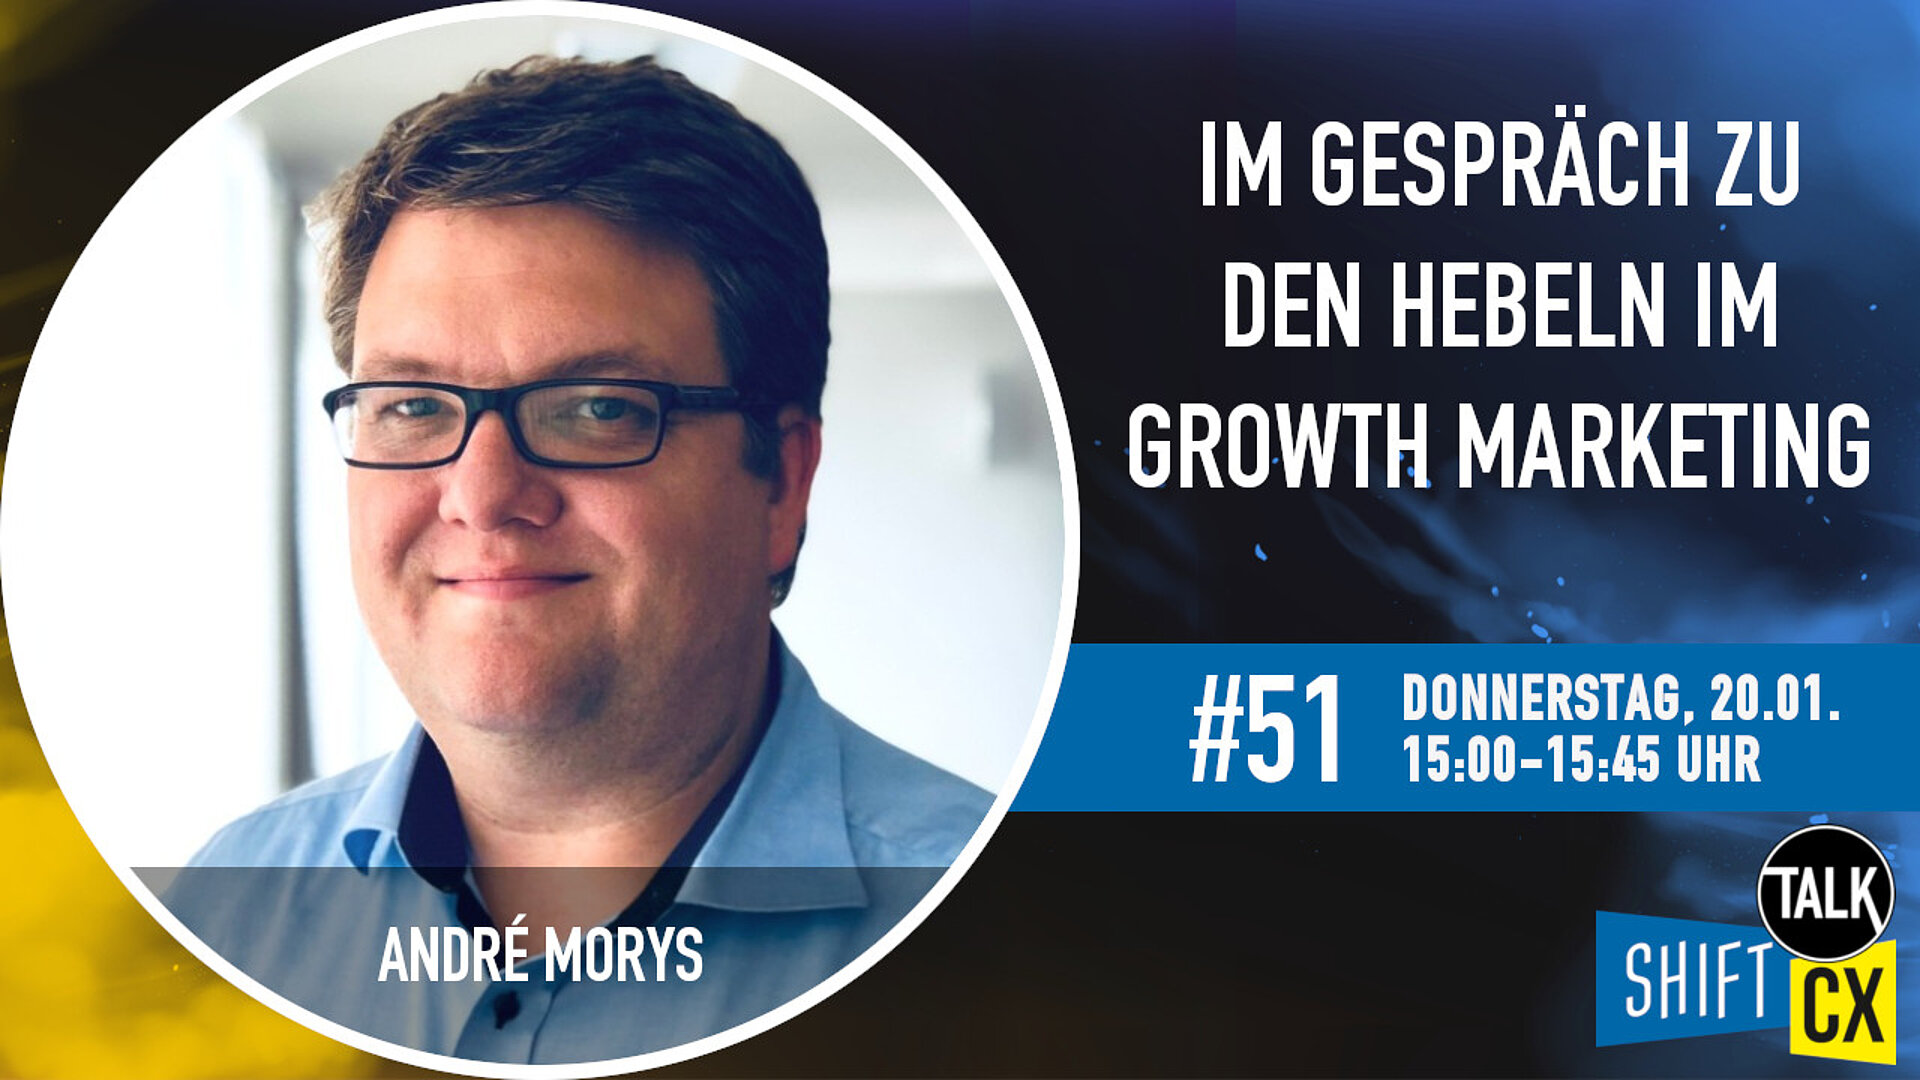 Im Gespräch mit André Morys über die Hebel im Growth Marketing